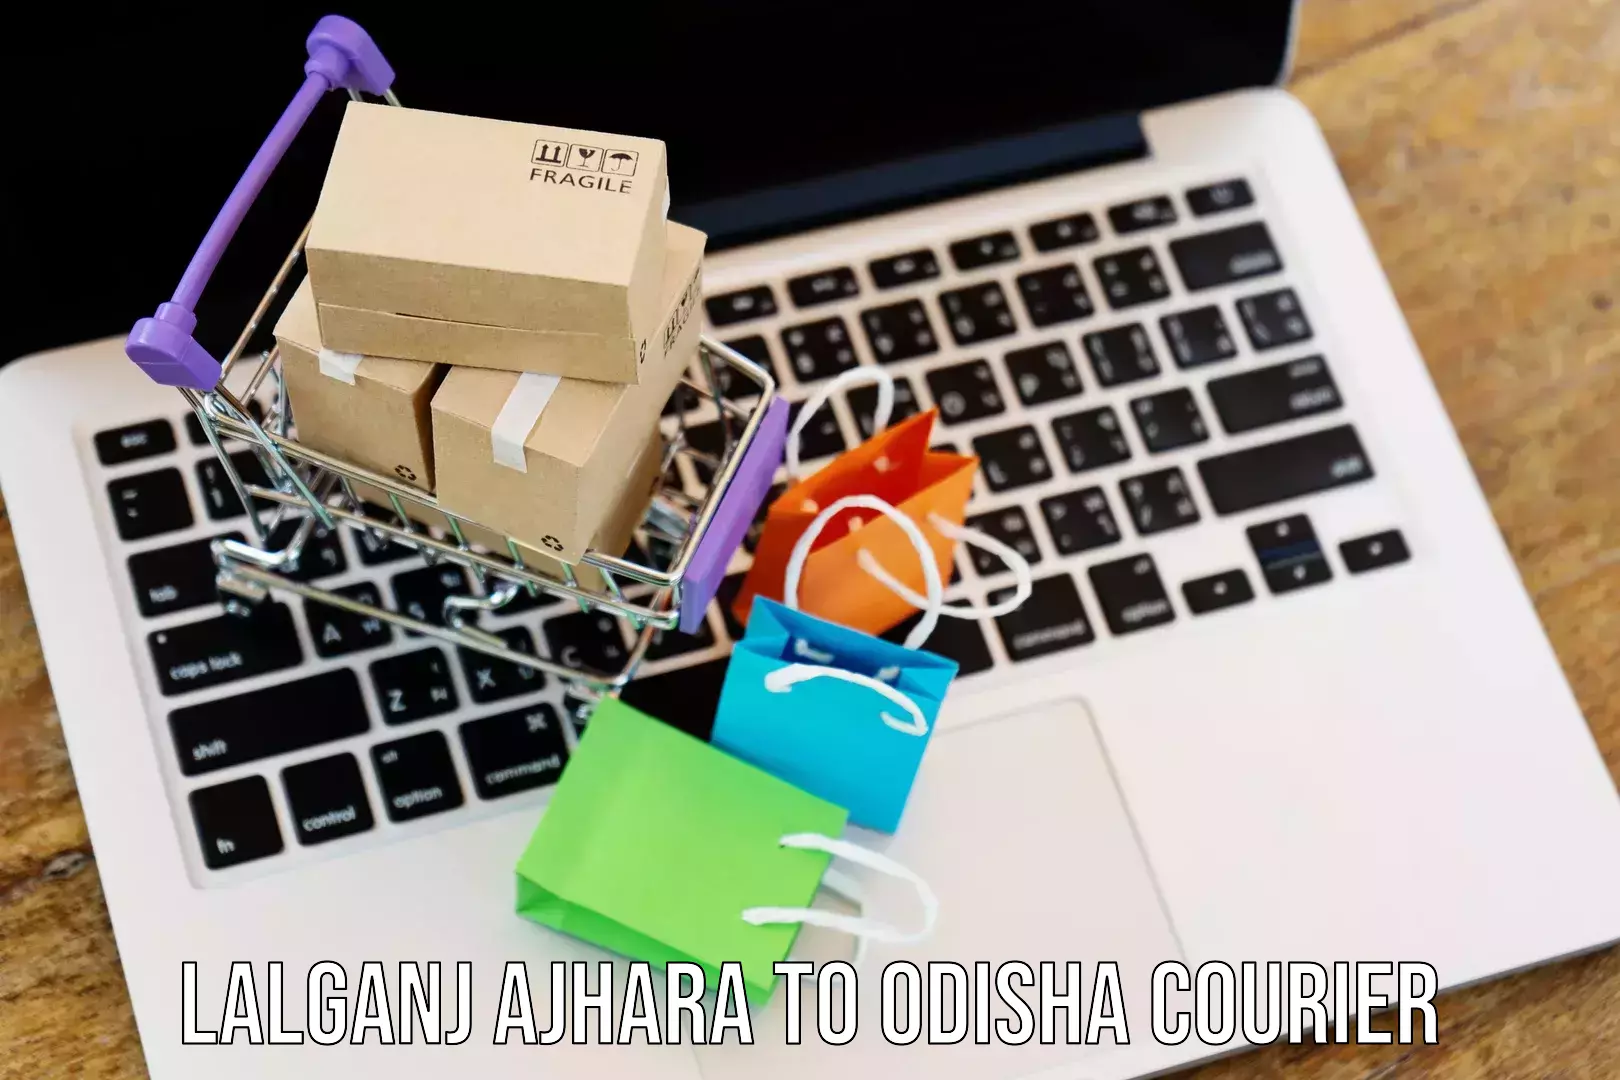 Next-generation courier services Lalganj Ajhara to Odisha